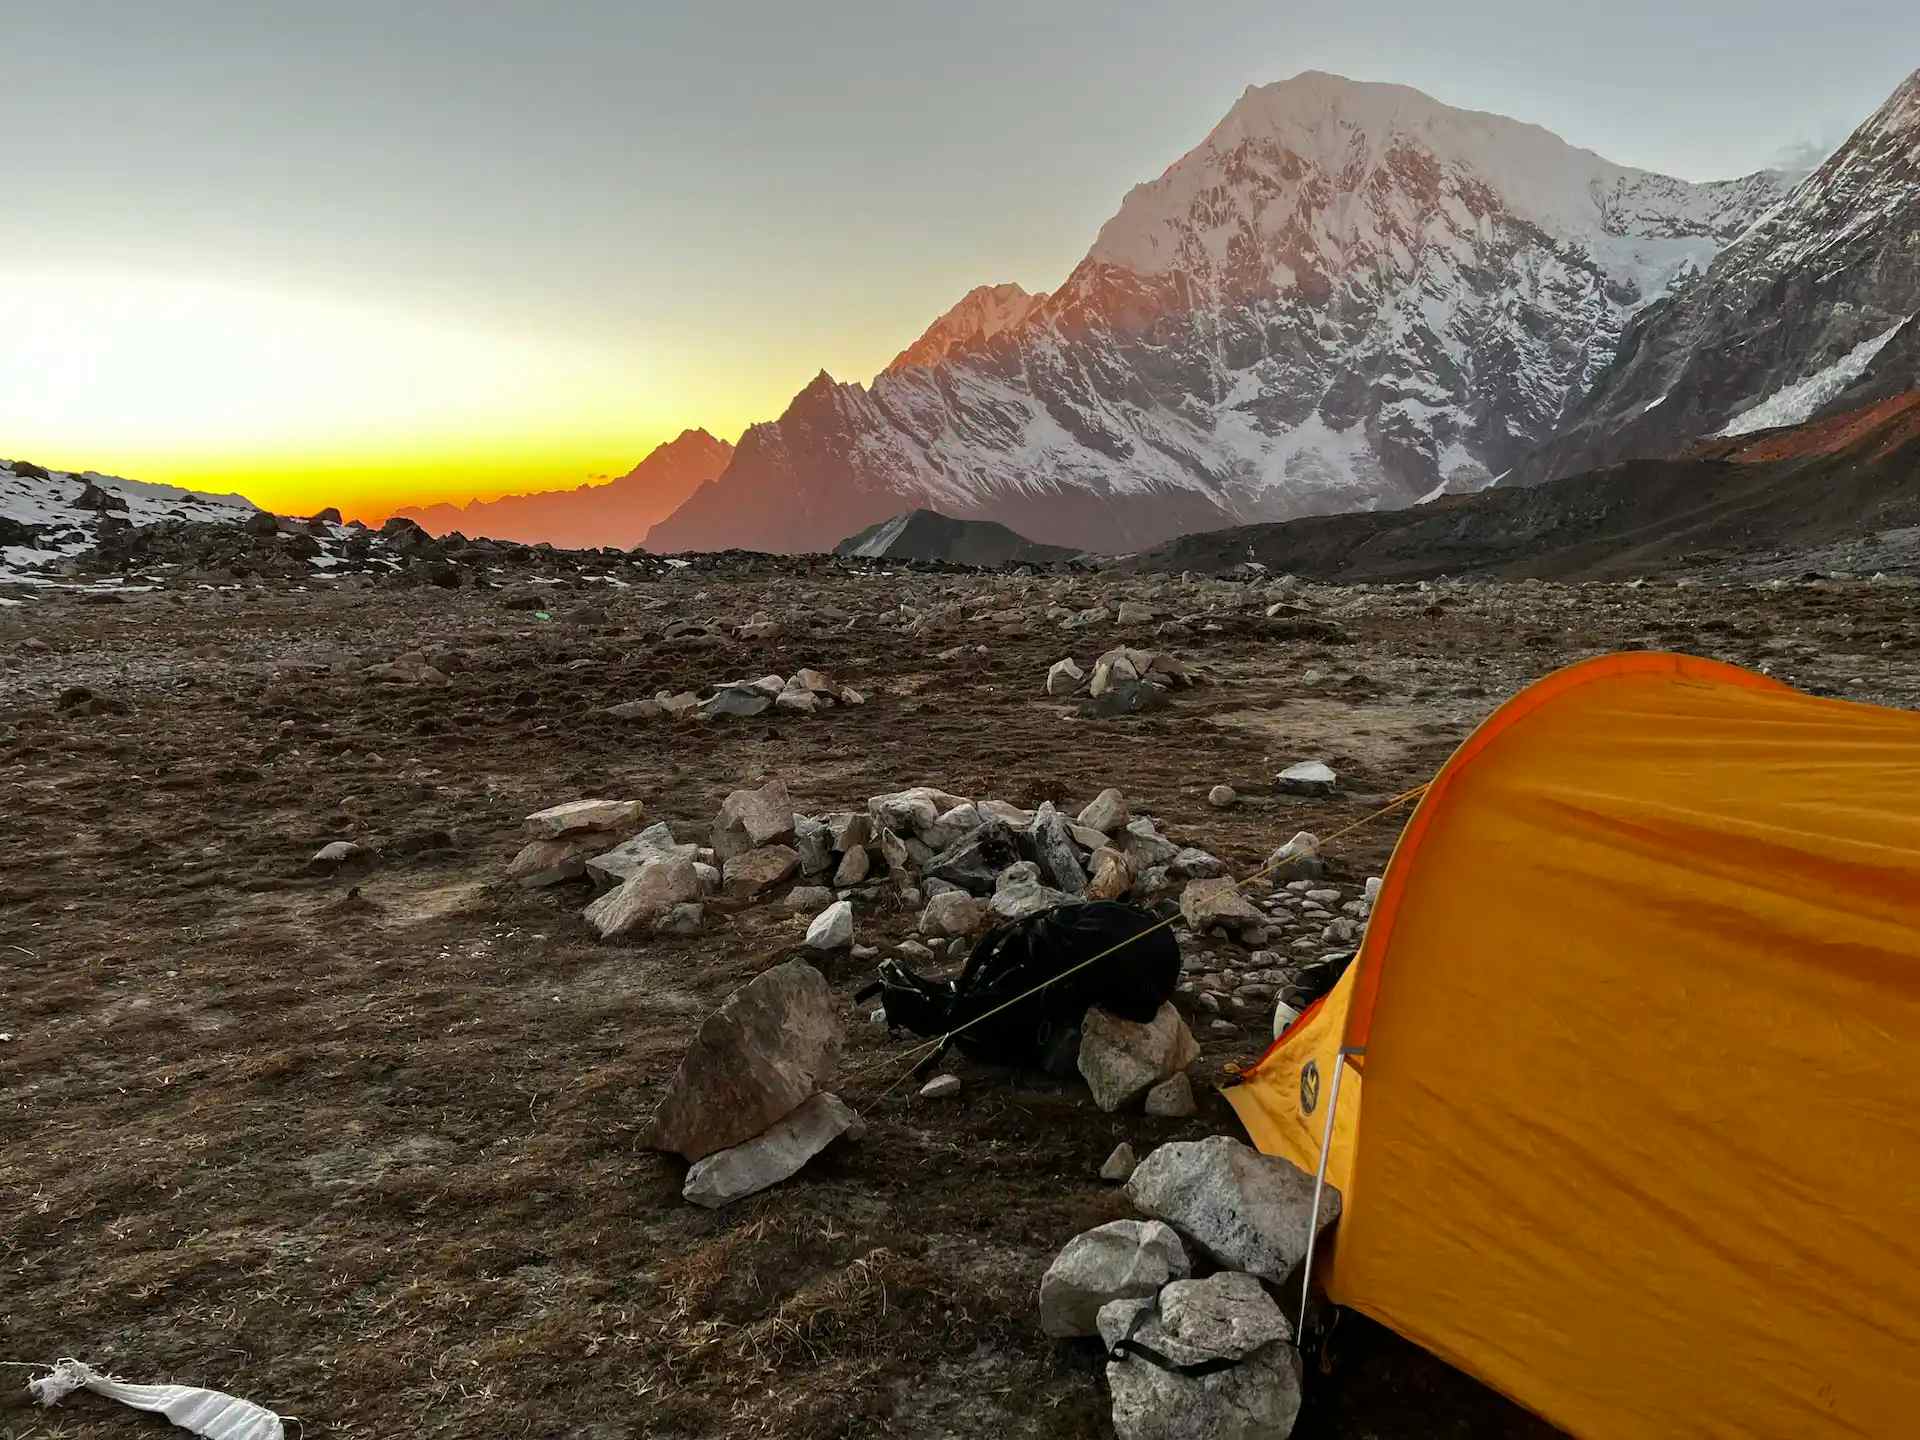 Yala Peak basecamp, Nepal. Photo: Customer/Rowan Brogden